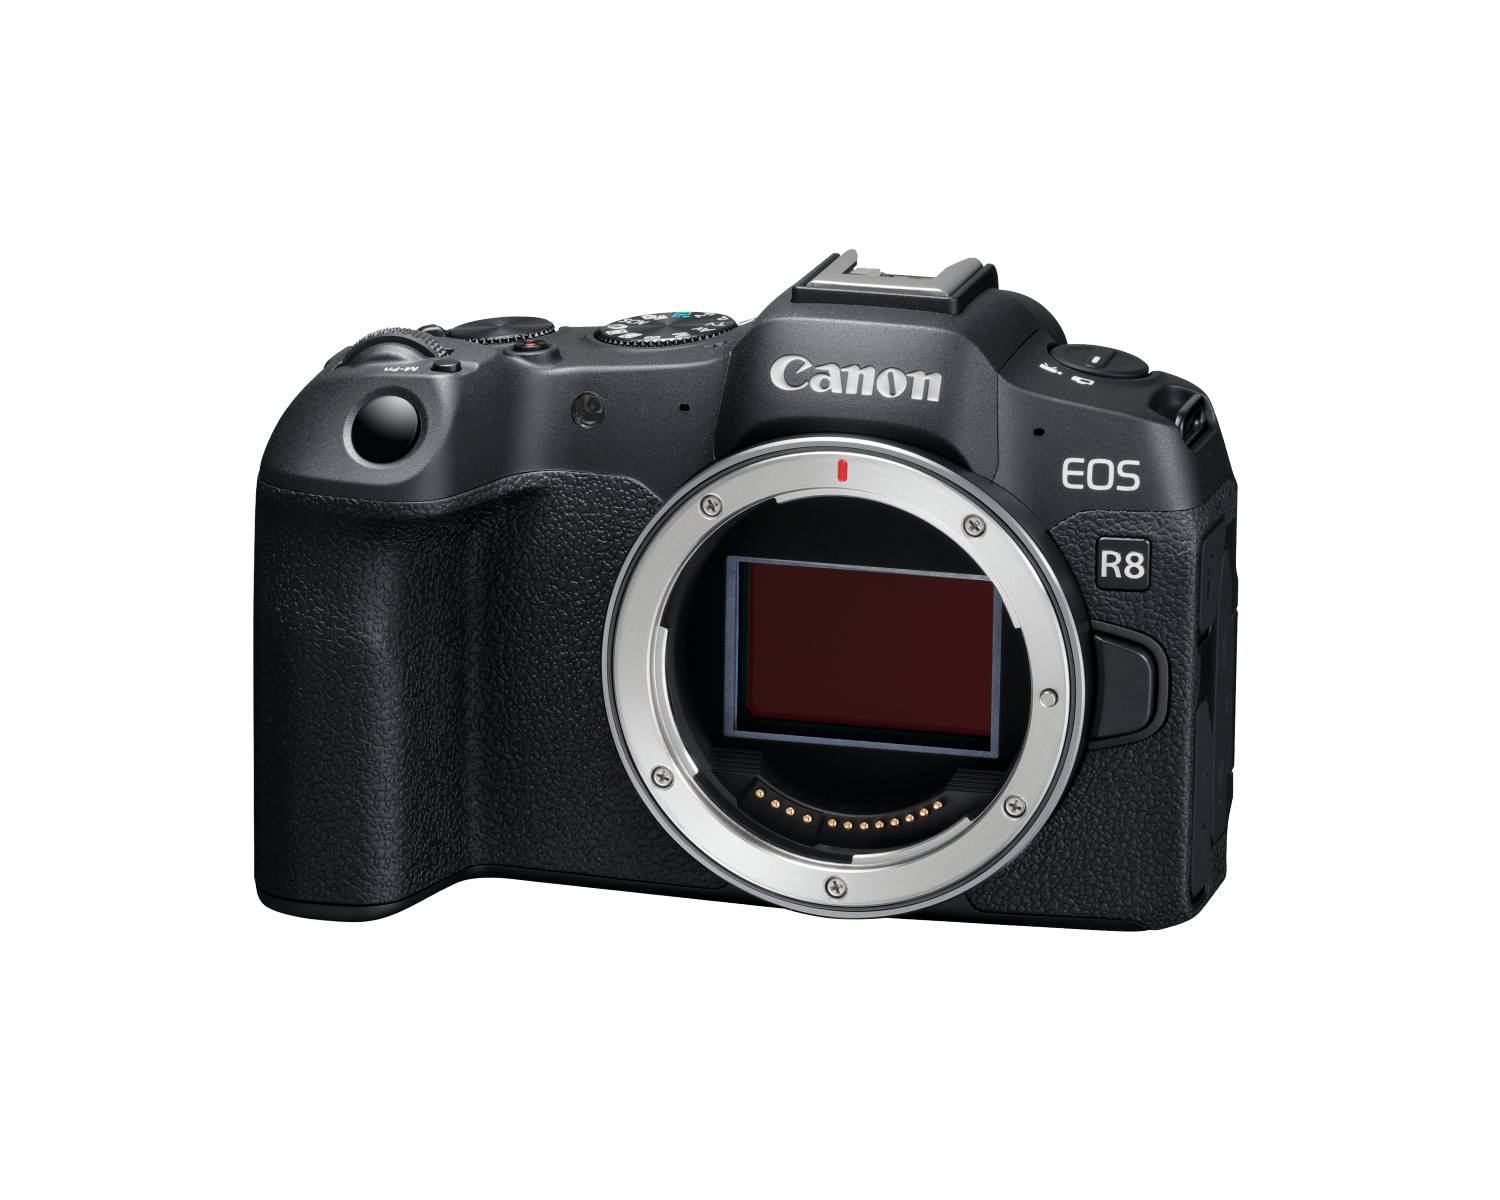 The Canon EOS R8